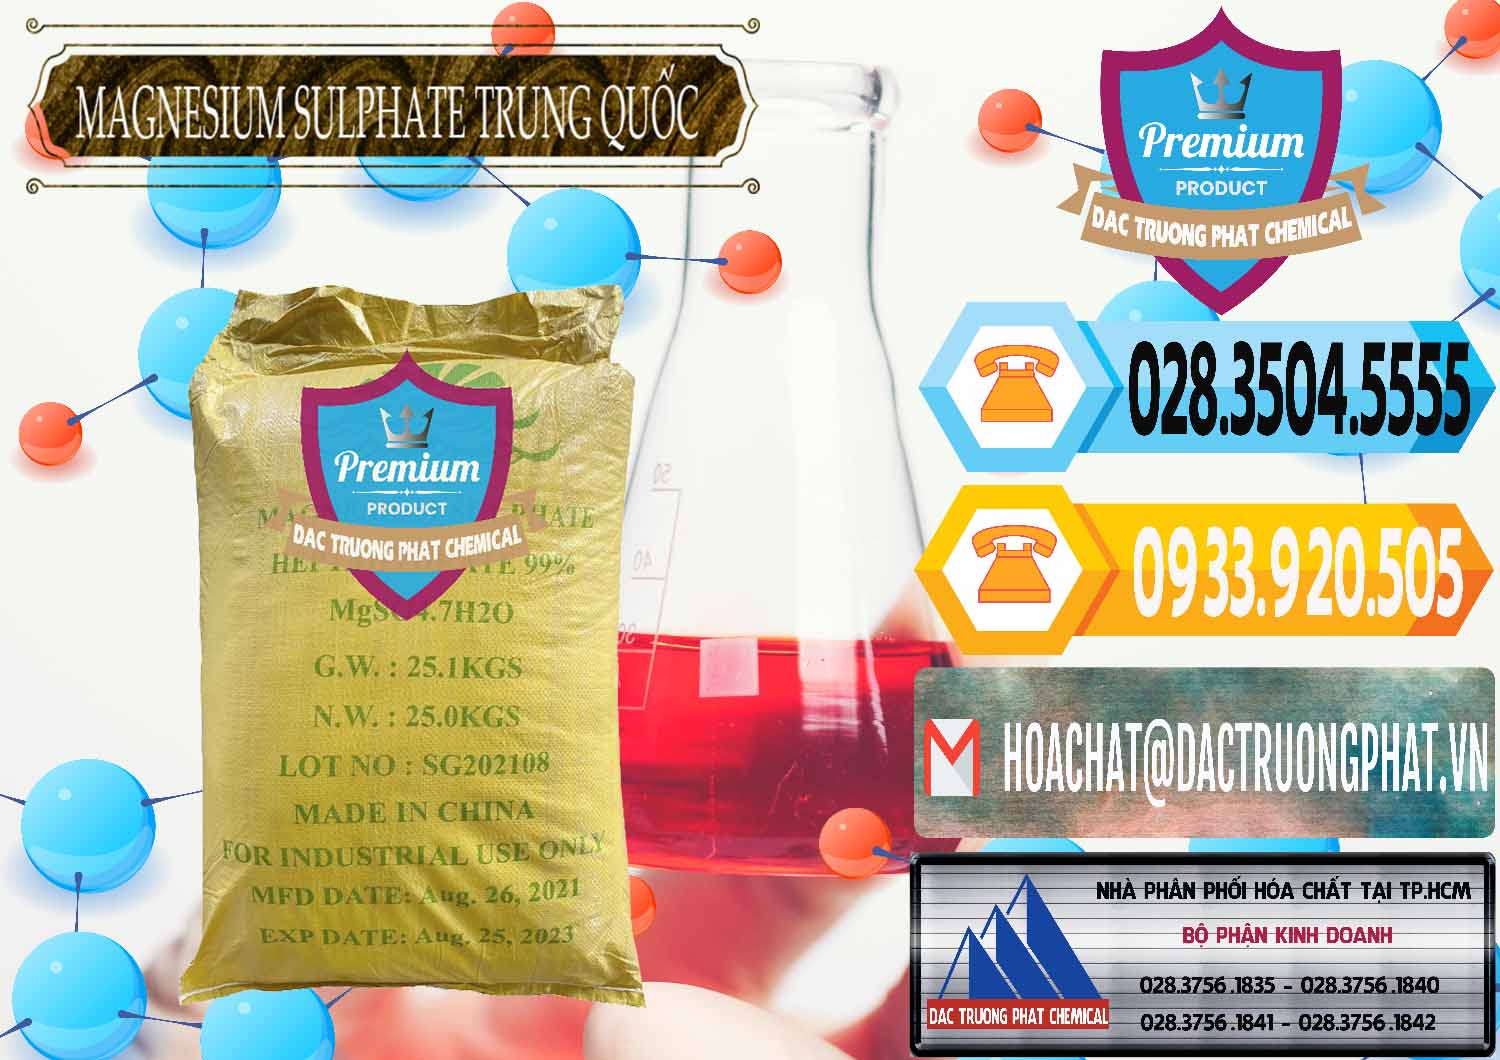 Kinh doanh _ bán MGSO4.7H2O – Magnesium Sulphate Heptahydrate 99% Trung Quốc China - 0440 - Cty chuyên bán & phân phối hóa chất tại TP.HCM - hoachattayrua.net